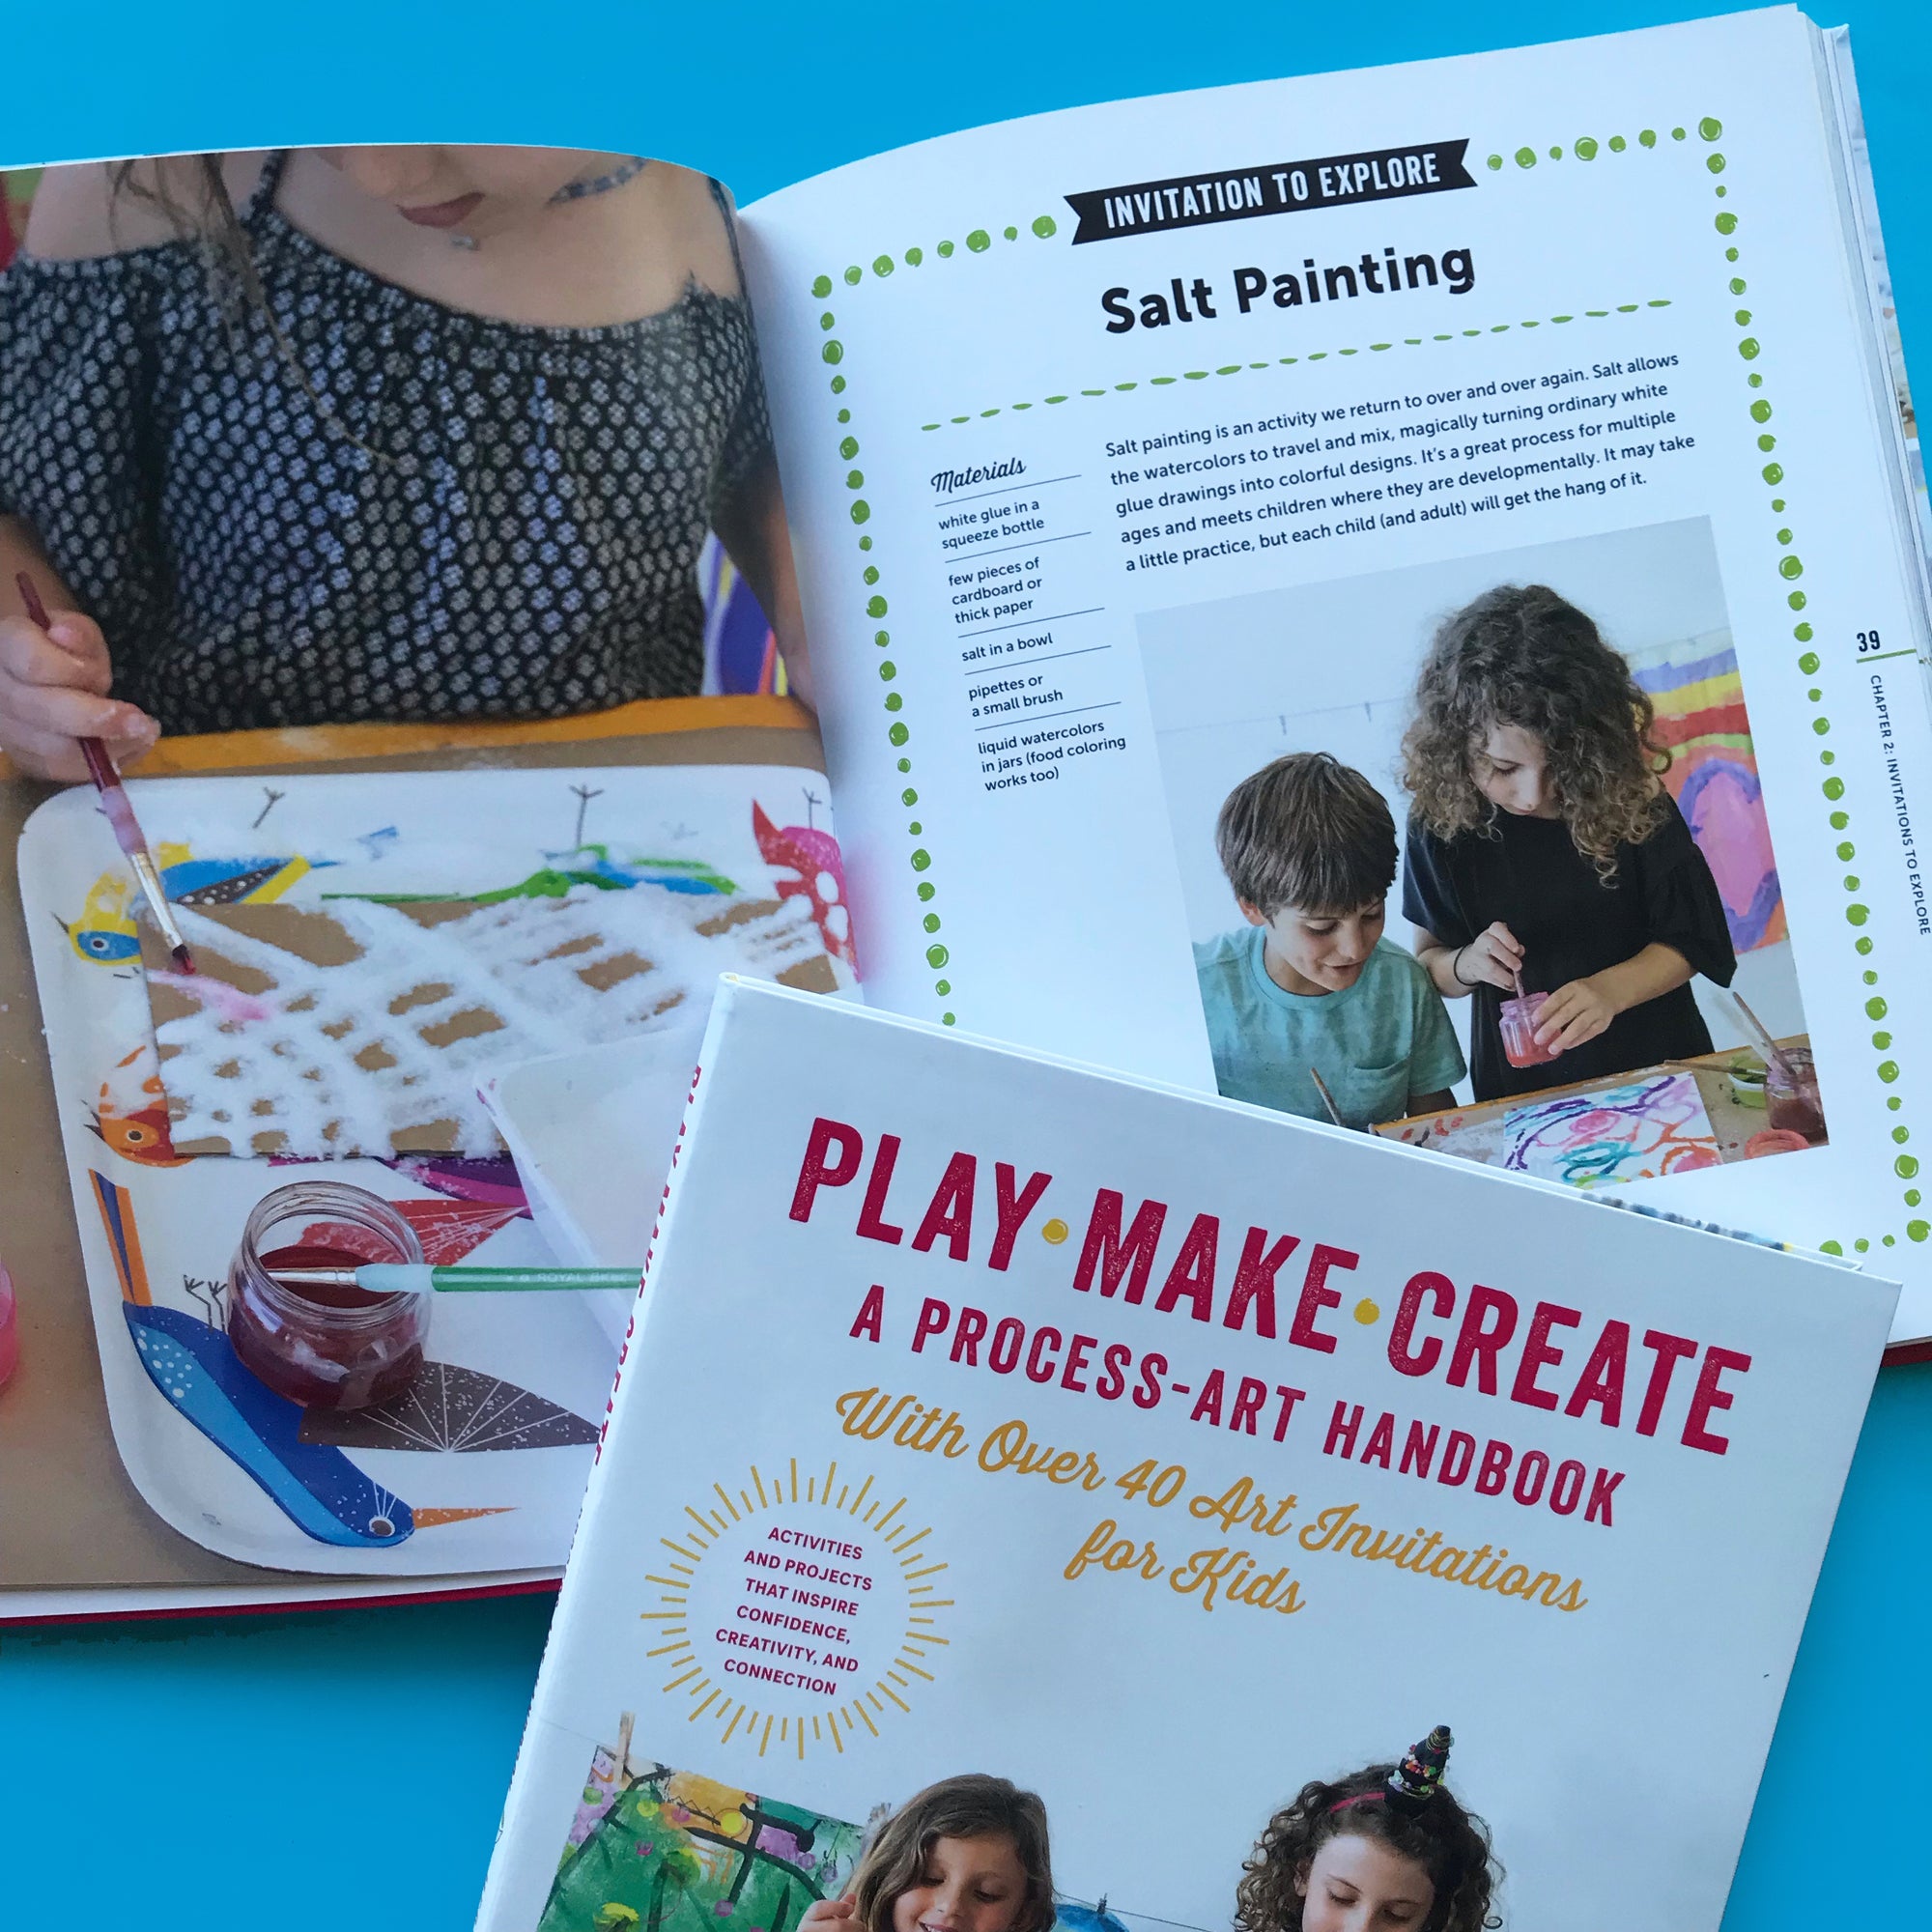 PLAY MAKE CREATE - A Process Art Handbook